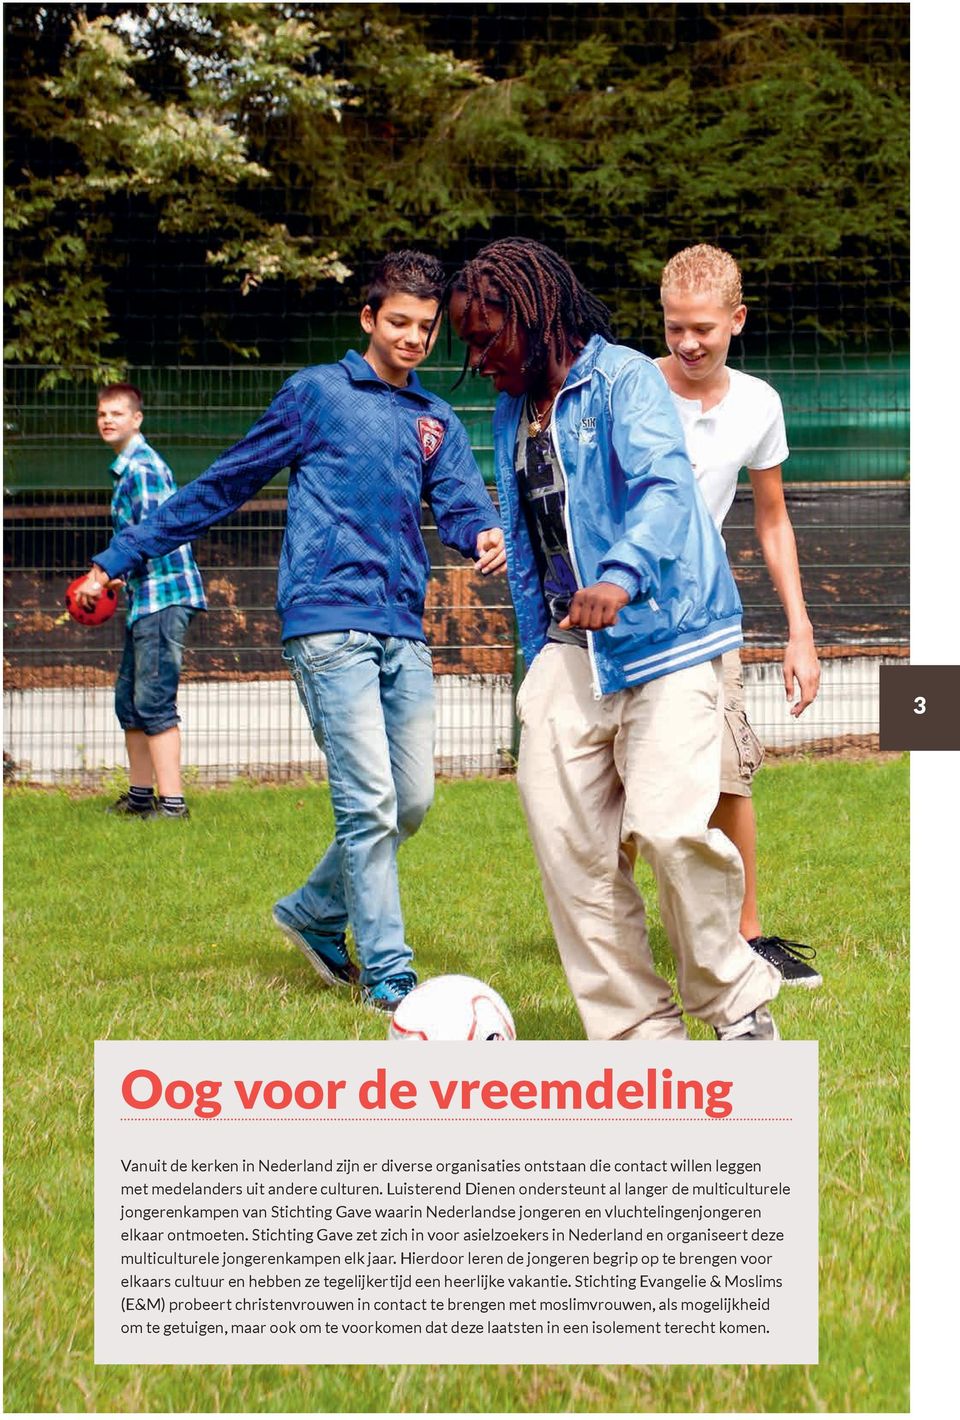 Stichting Gave zet zich in voor asielzoekers in Nederland en organiseert deze multiculturele jongerenkampen elk jaar.